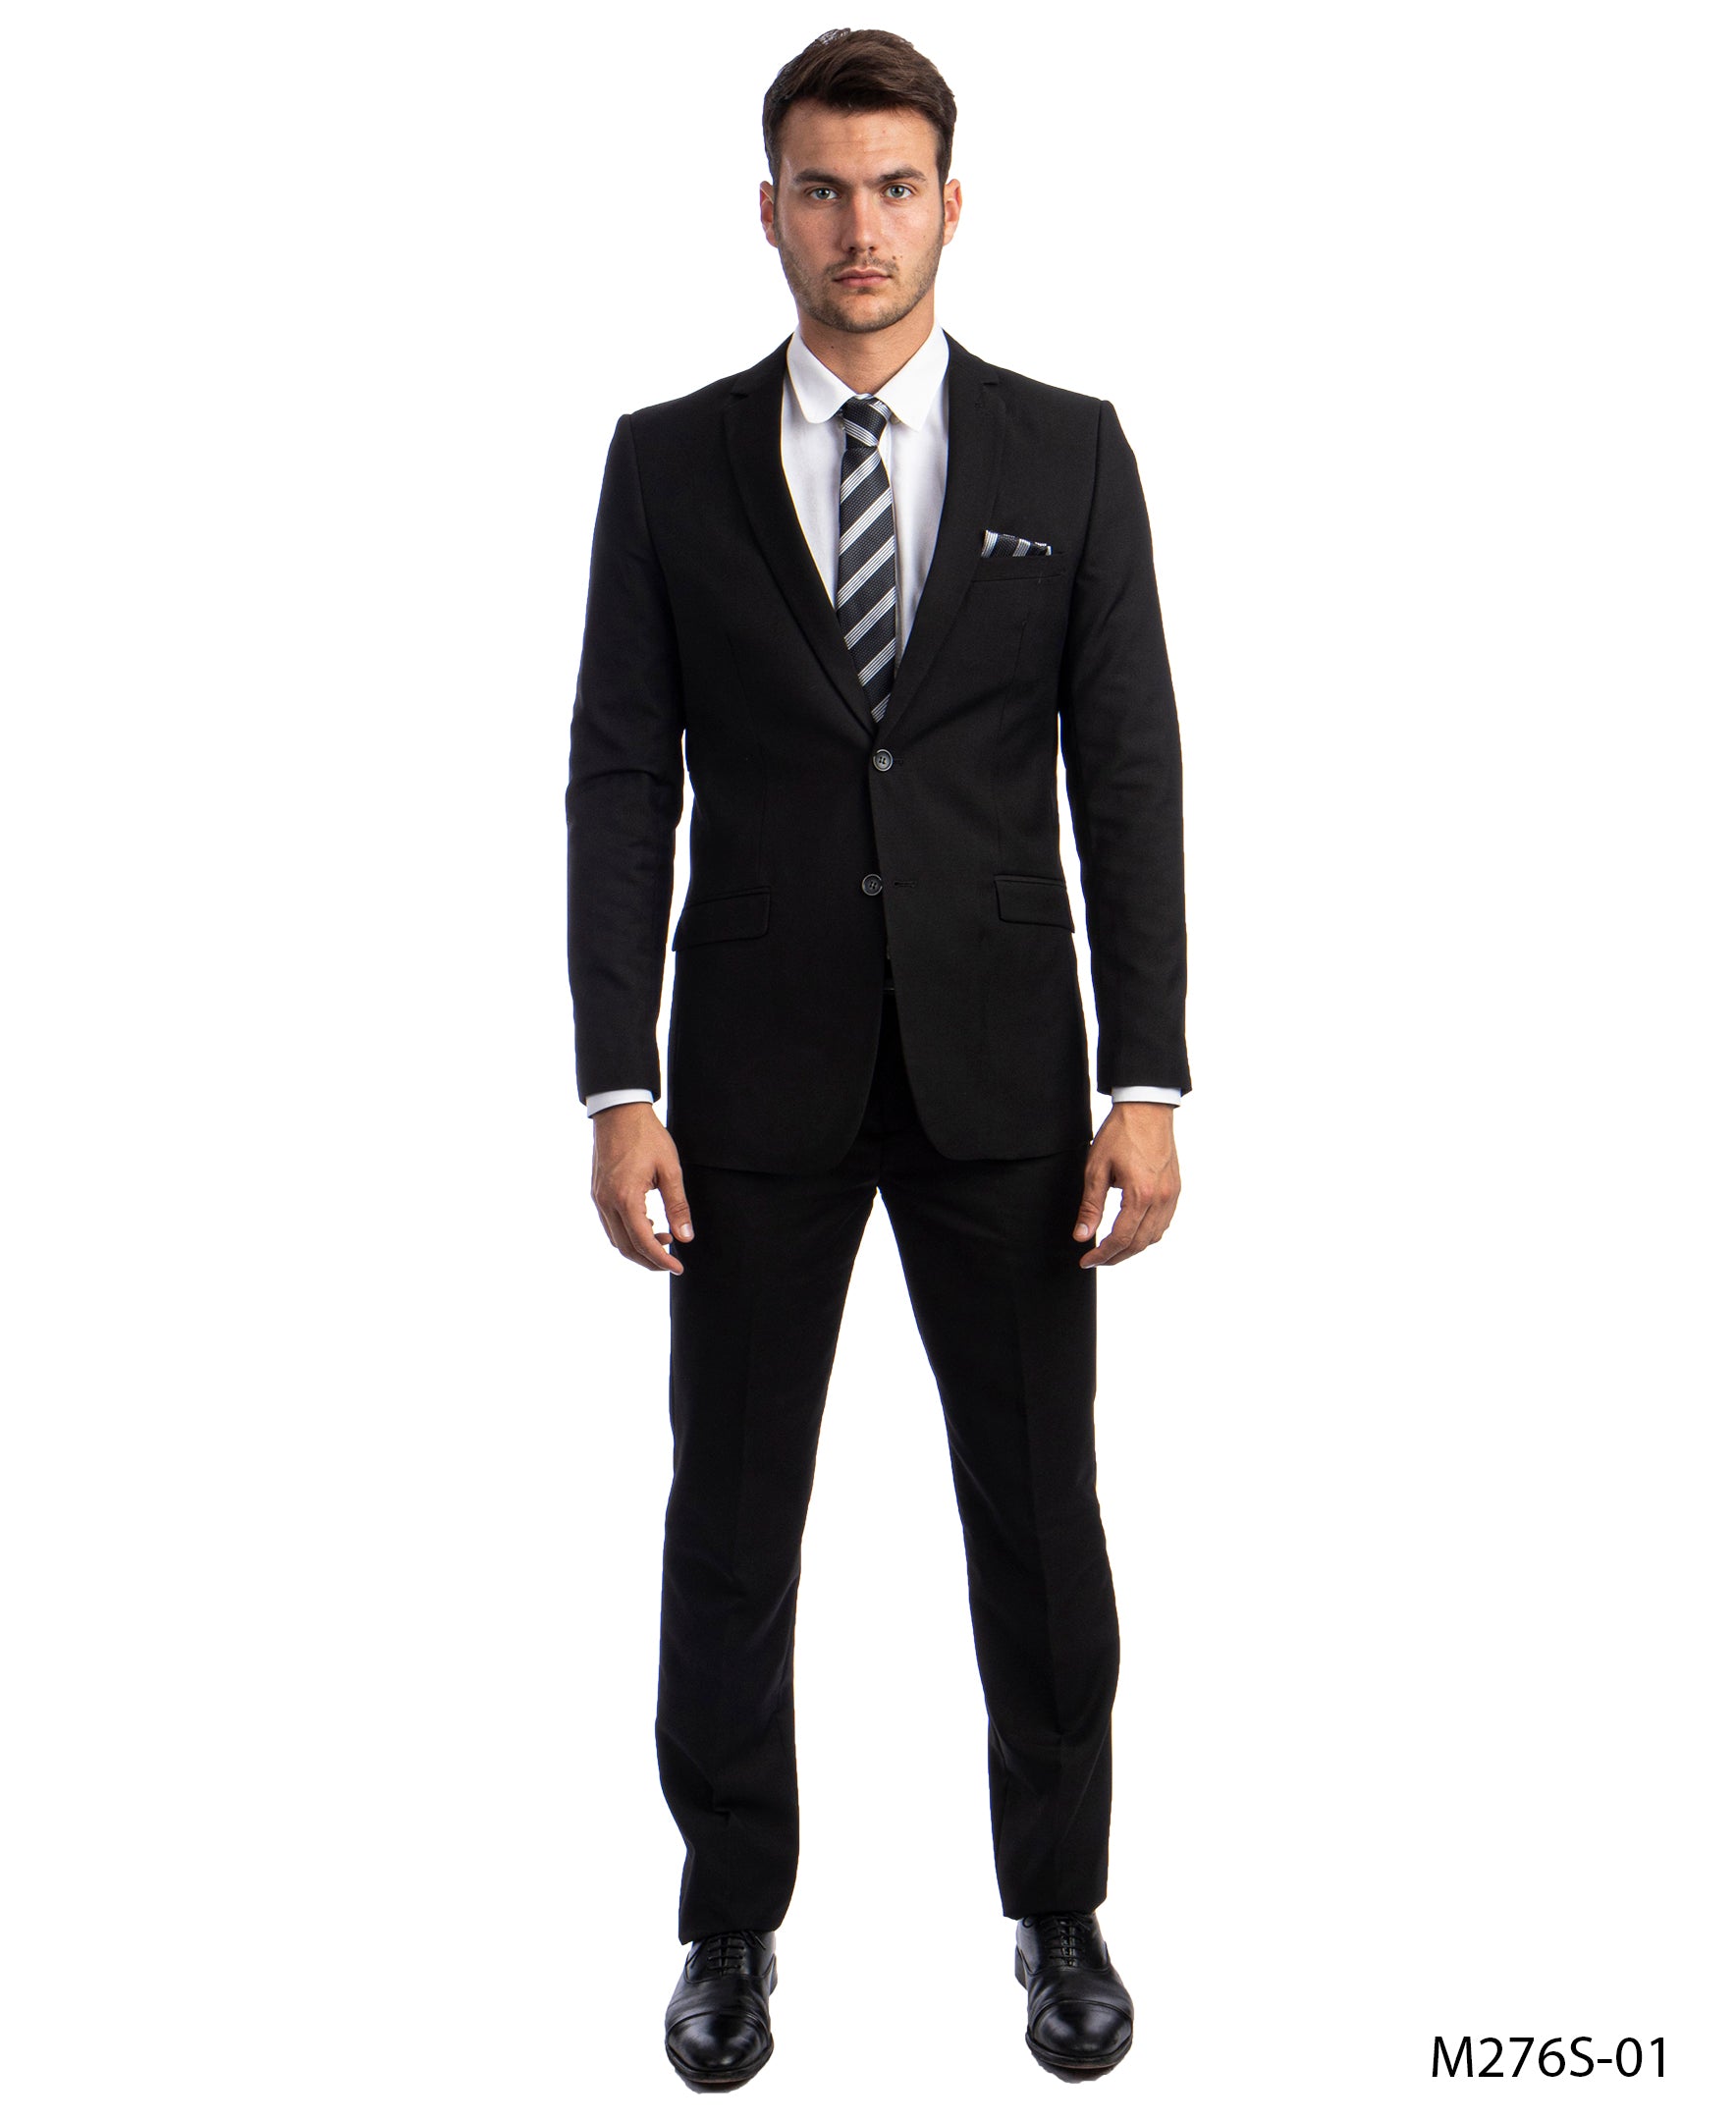 title:Azzuro Black Suits 2 PC Slim Fit;color:Black